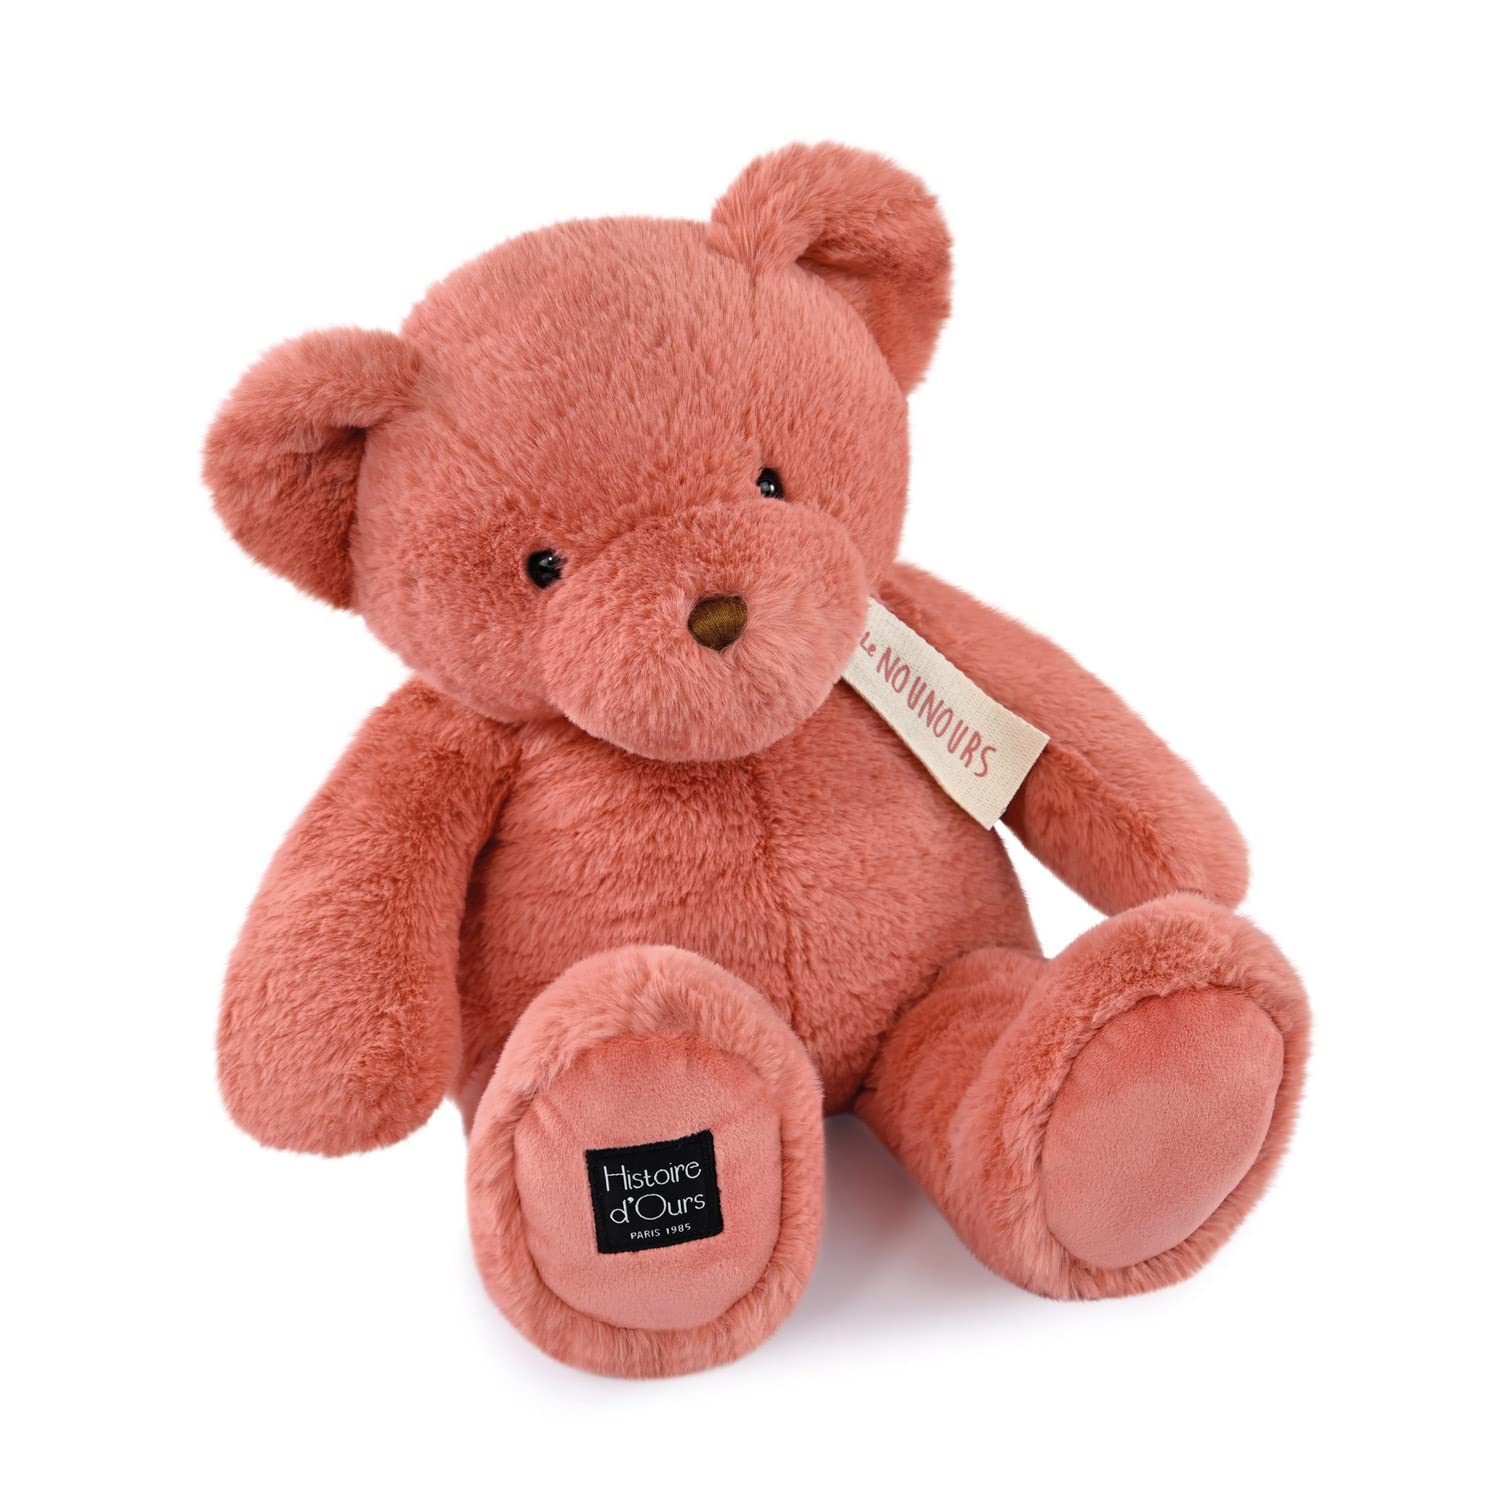 Histoire d'ours - Der Teddybär, 40 cm, Rosa, 40 cm, Geschenk zur Geburt, HO3233